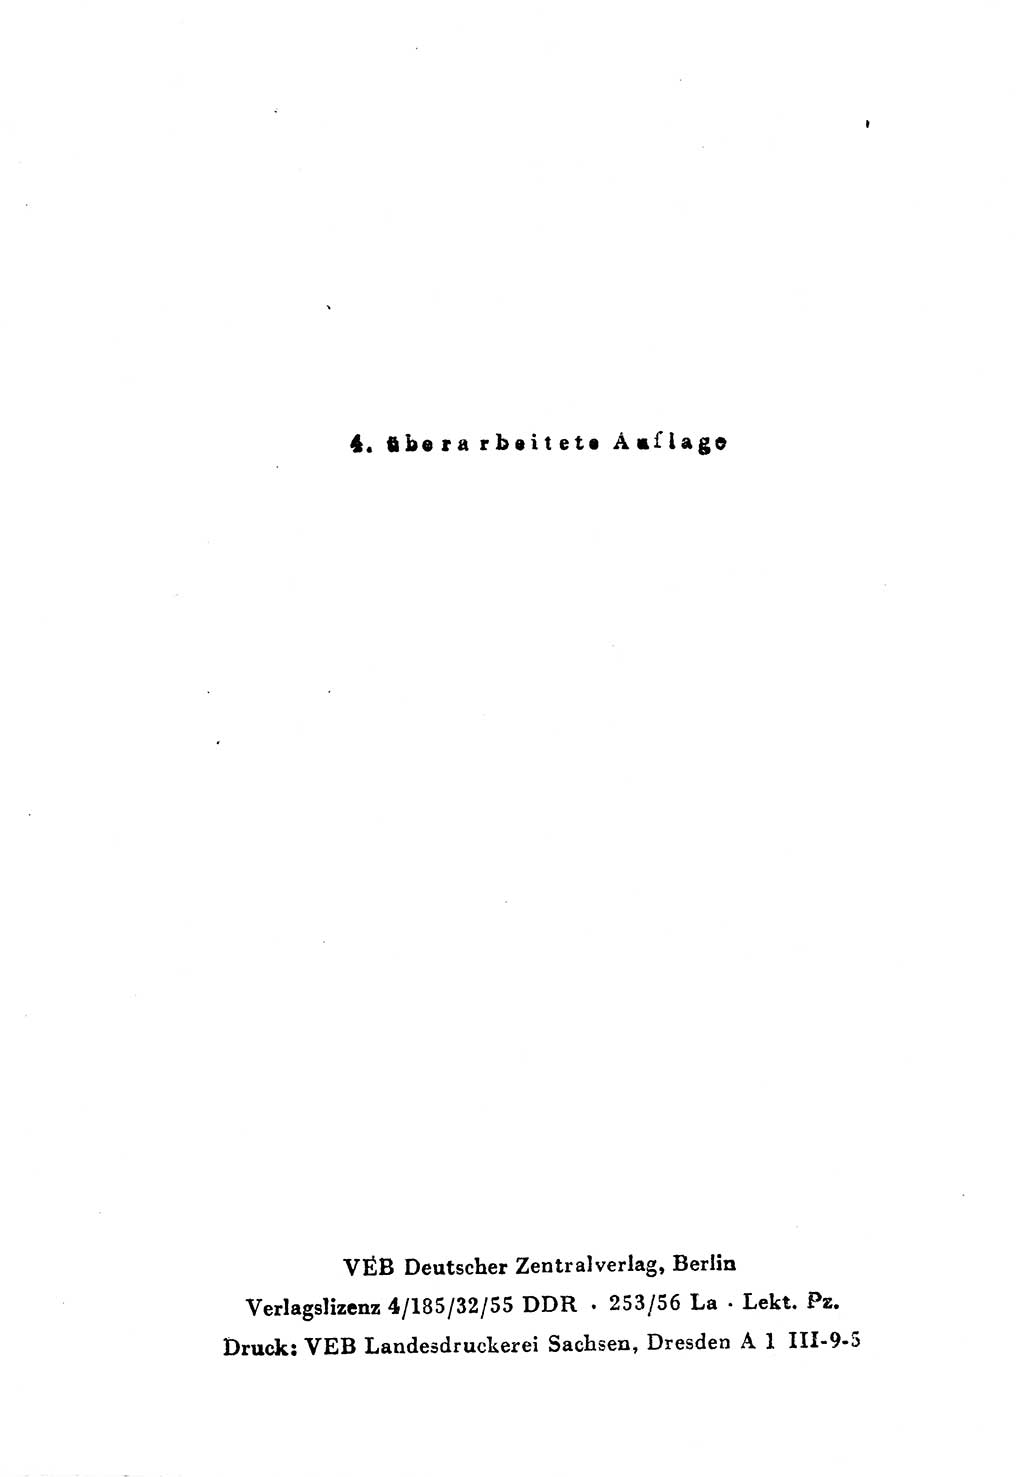 Einleitung Strafgesetzbuch (StGB) und andere Strafgesetze [Deutsche Demokratische Republik (DDR)] 1956, Seite 4 (Einl. StGB Strafges. DDR 1956, S. 4)